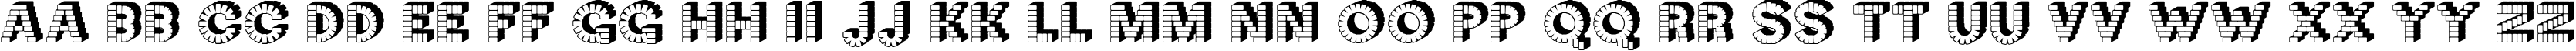 Пример написания английского алфавита шрифтом Neck Candy